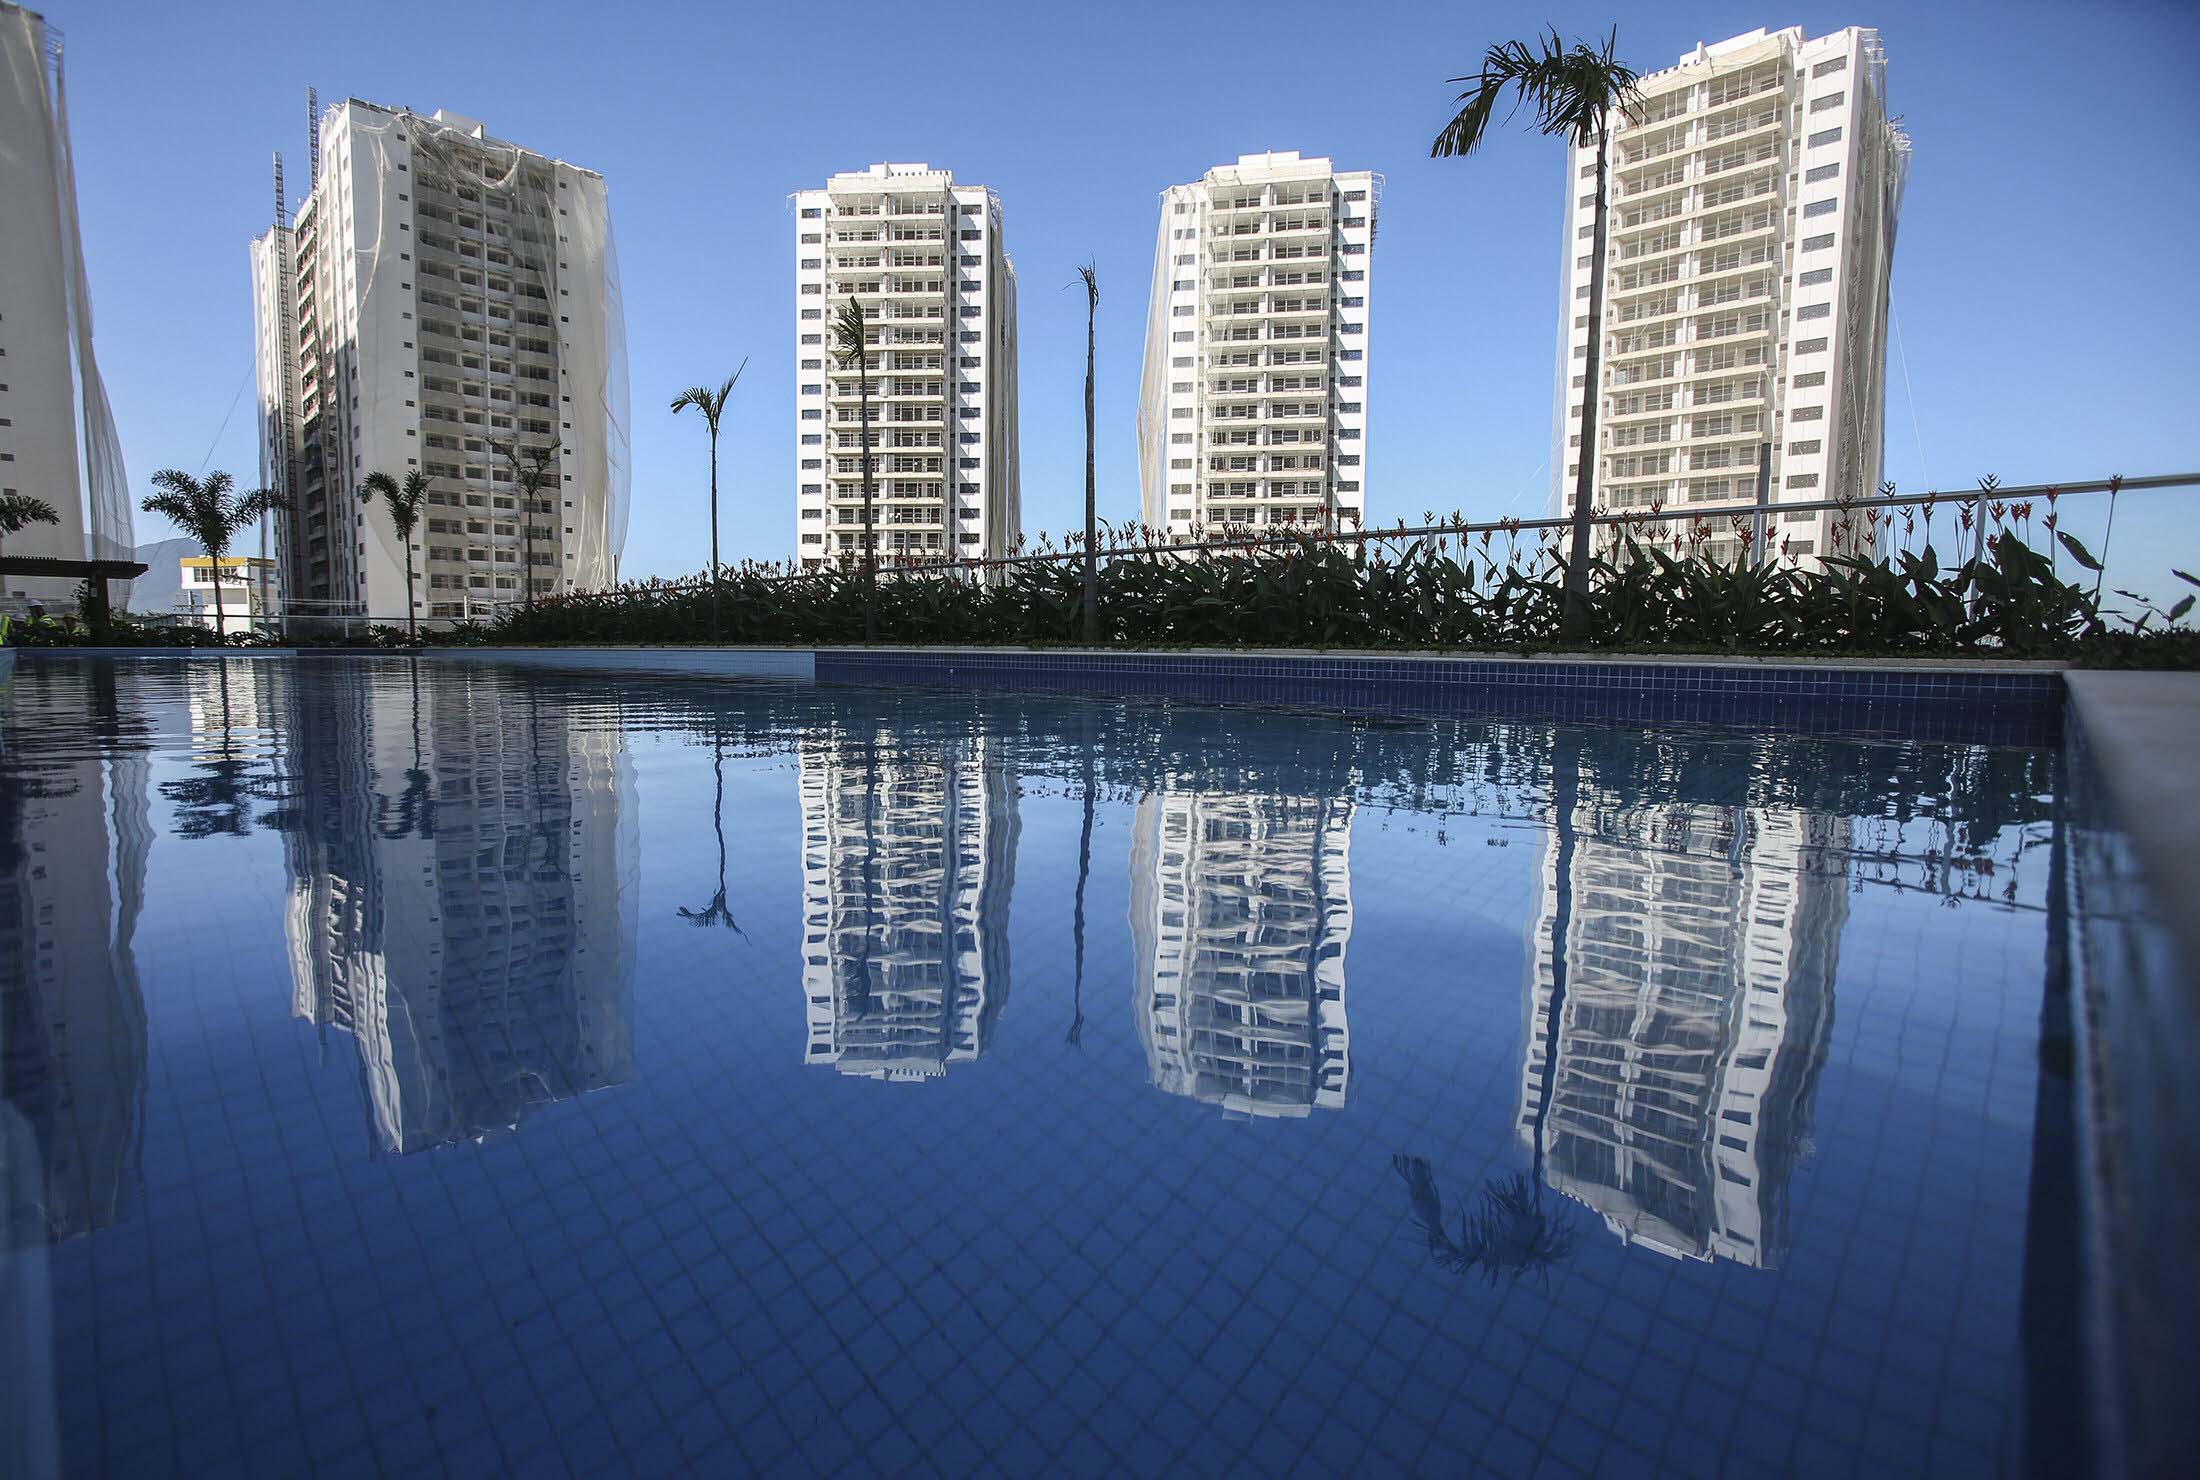 Villa Olímpica para los Juegos Olímpicos Río 2016.